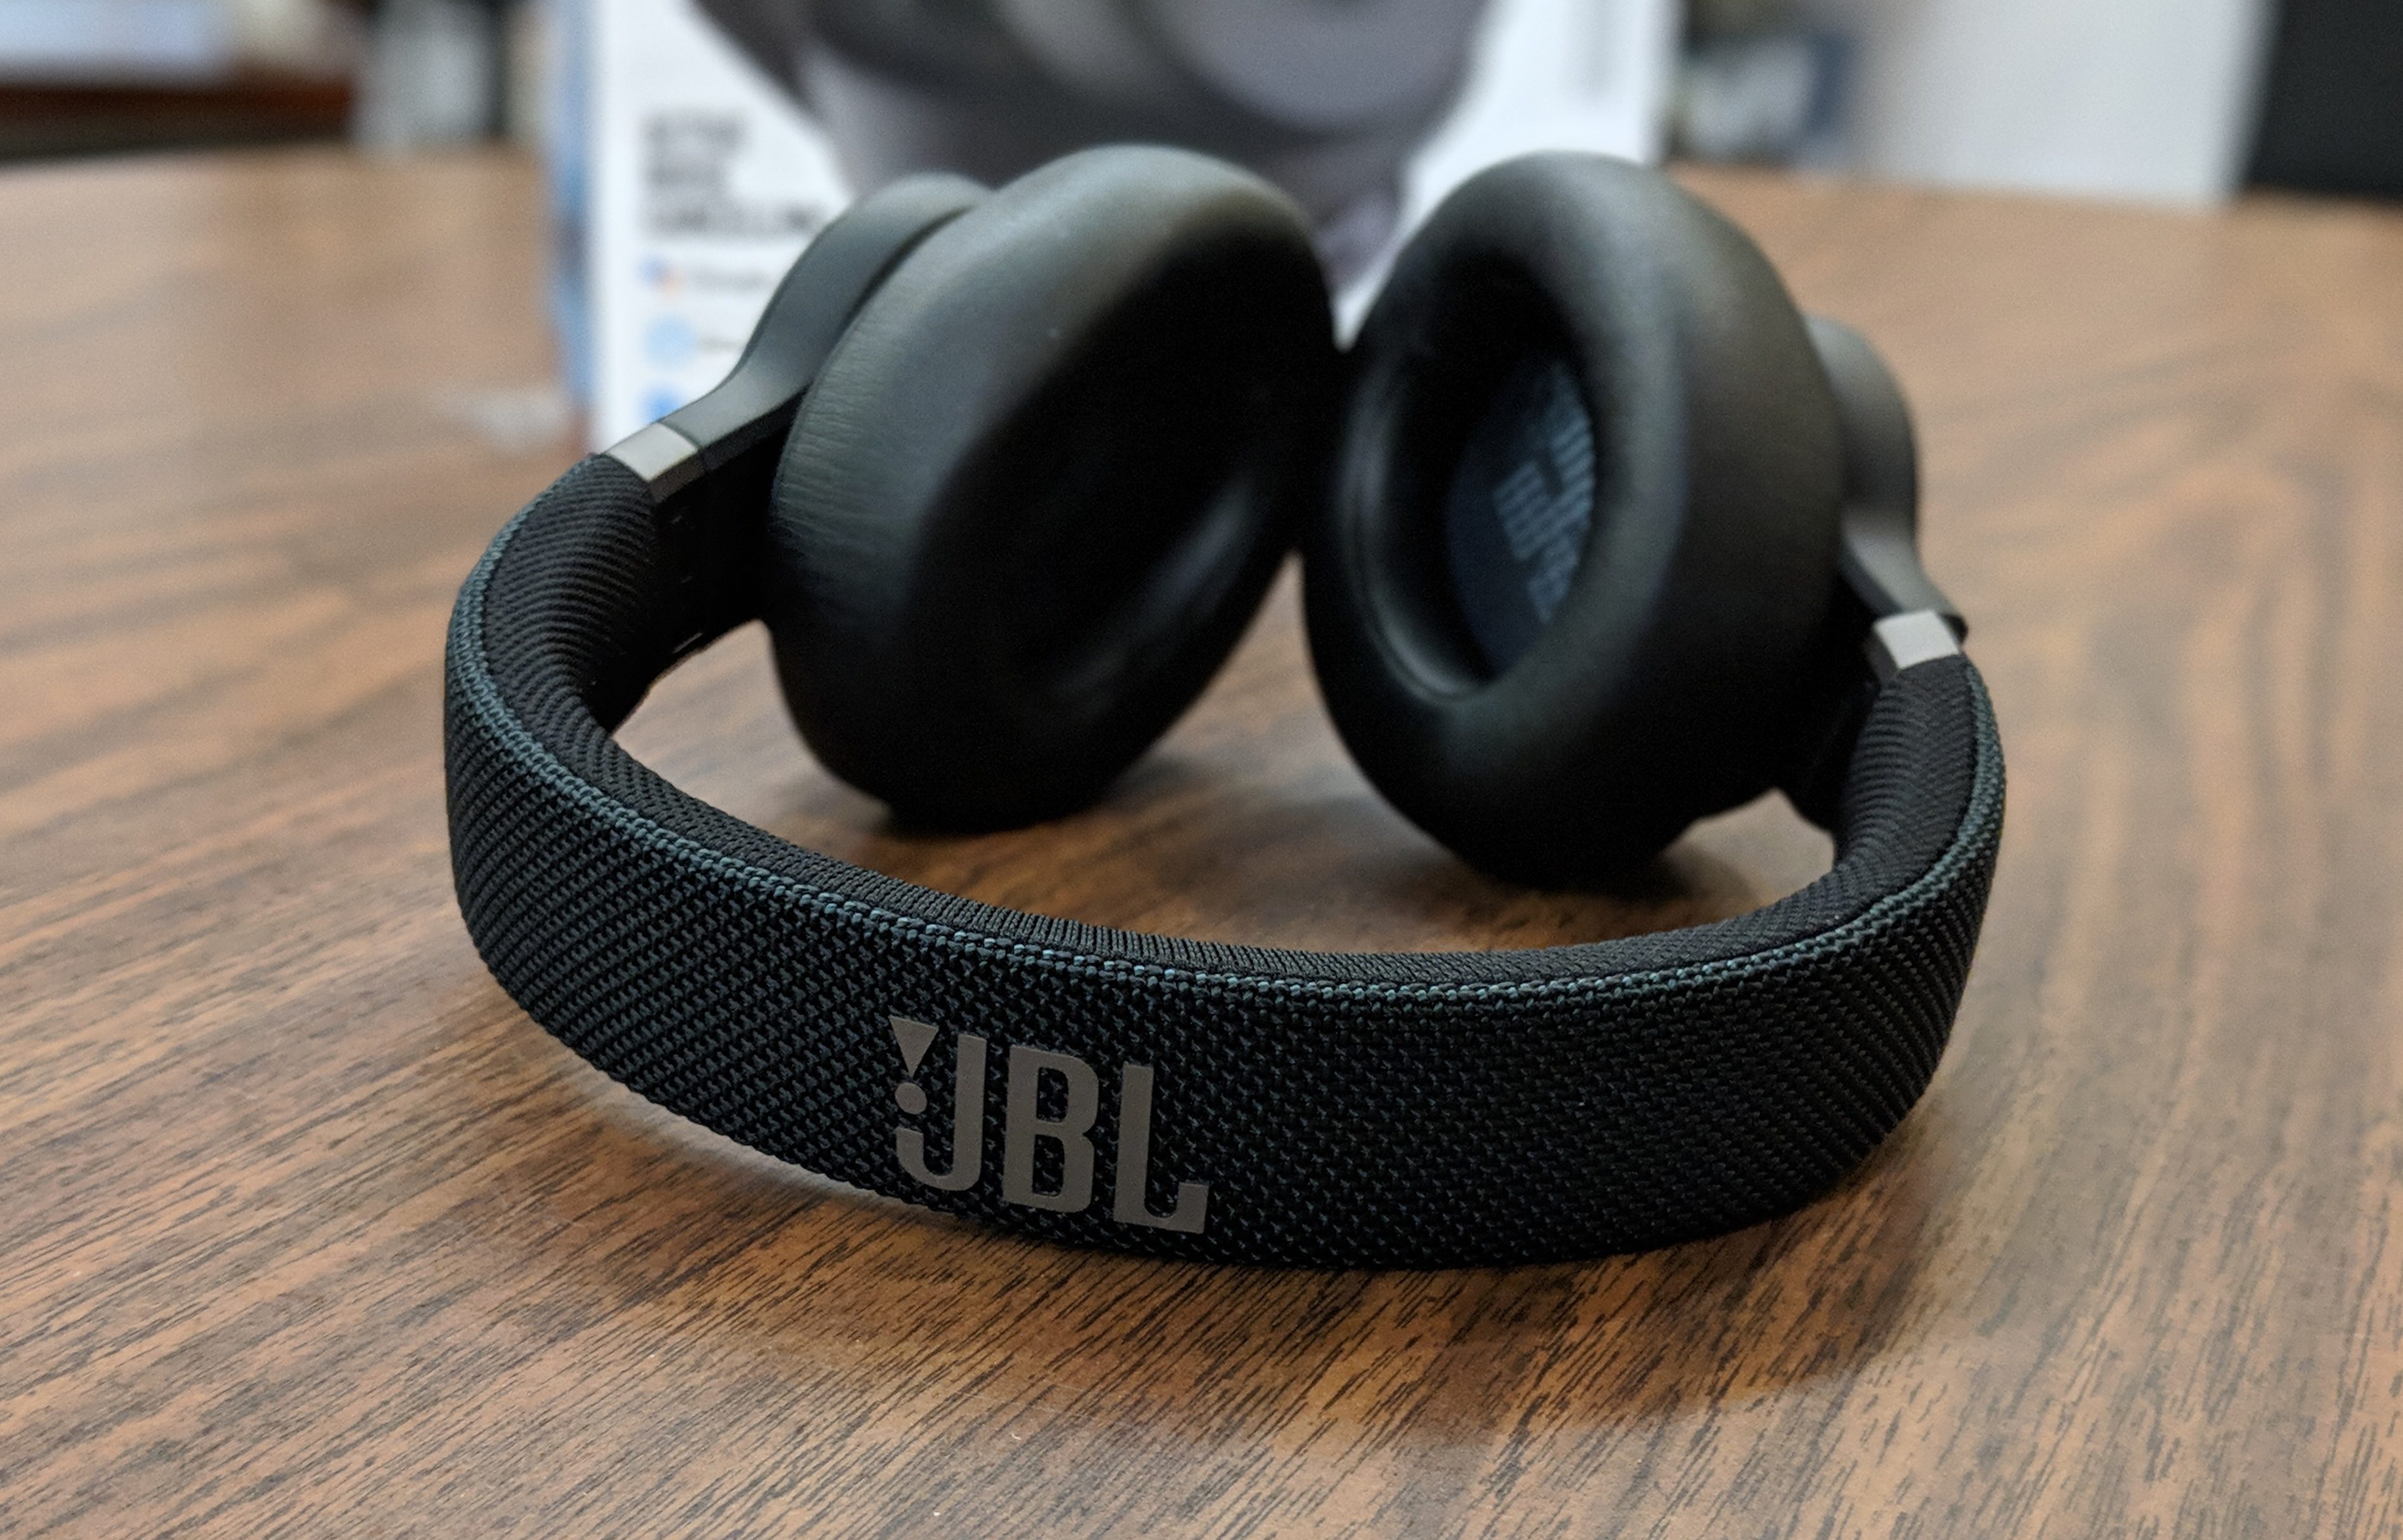 JBL Live 650BTNC Headphones Review